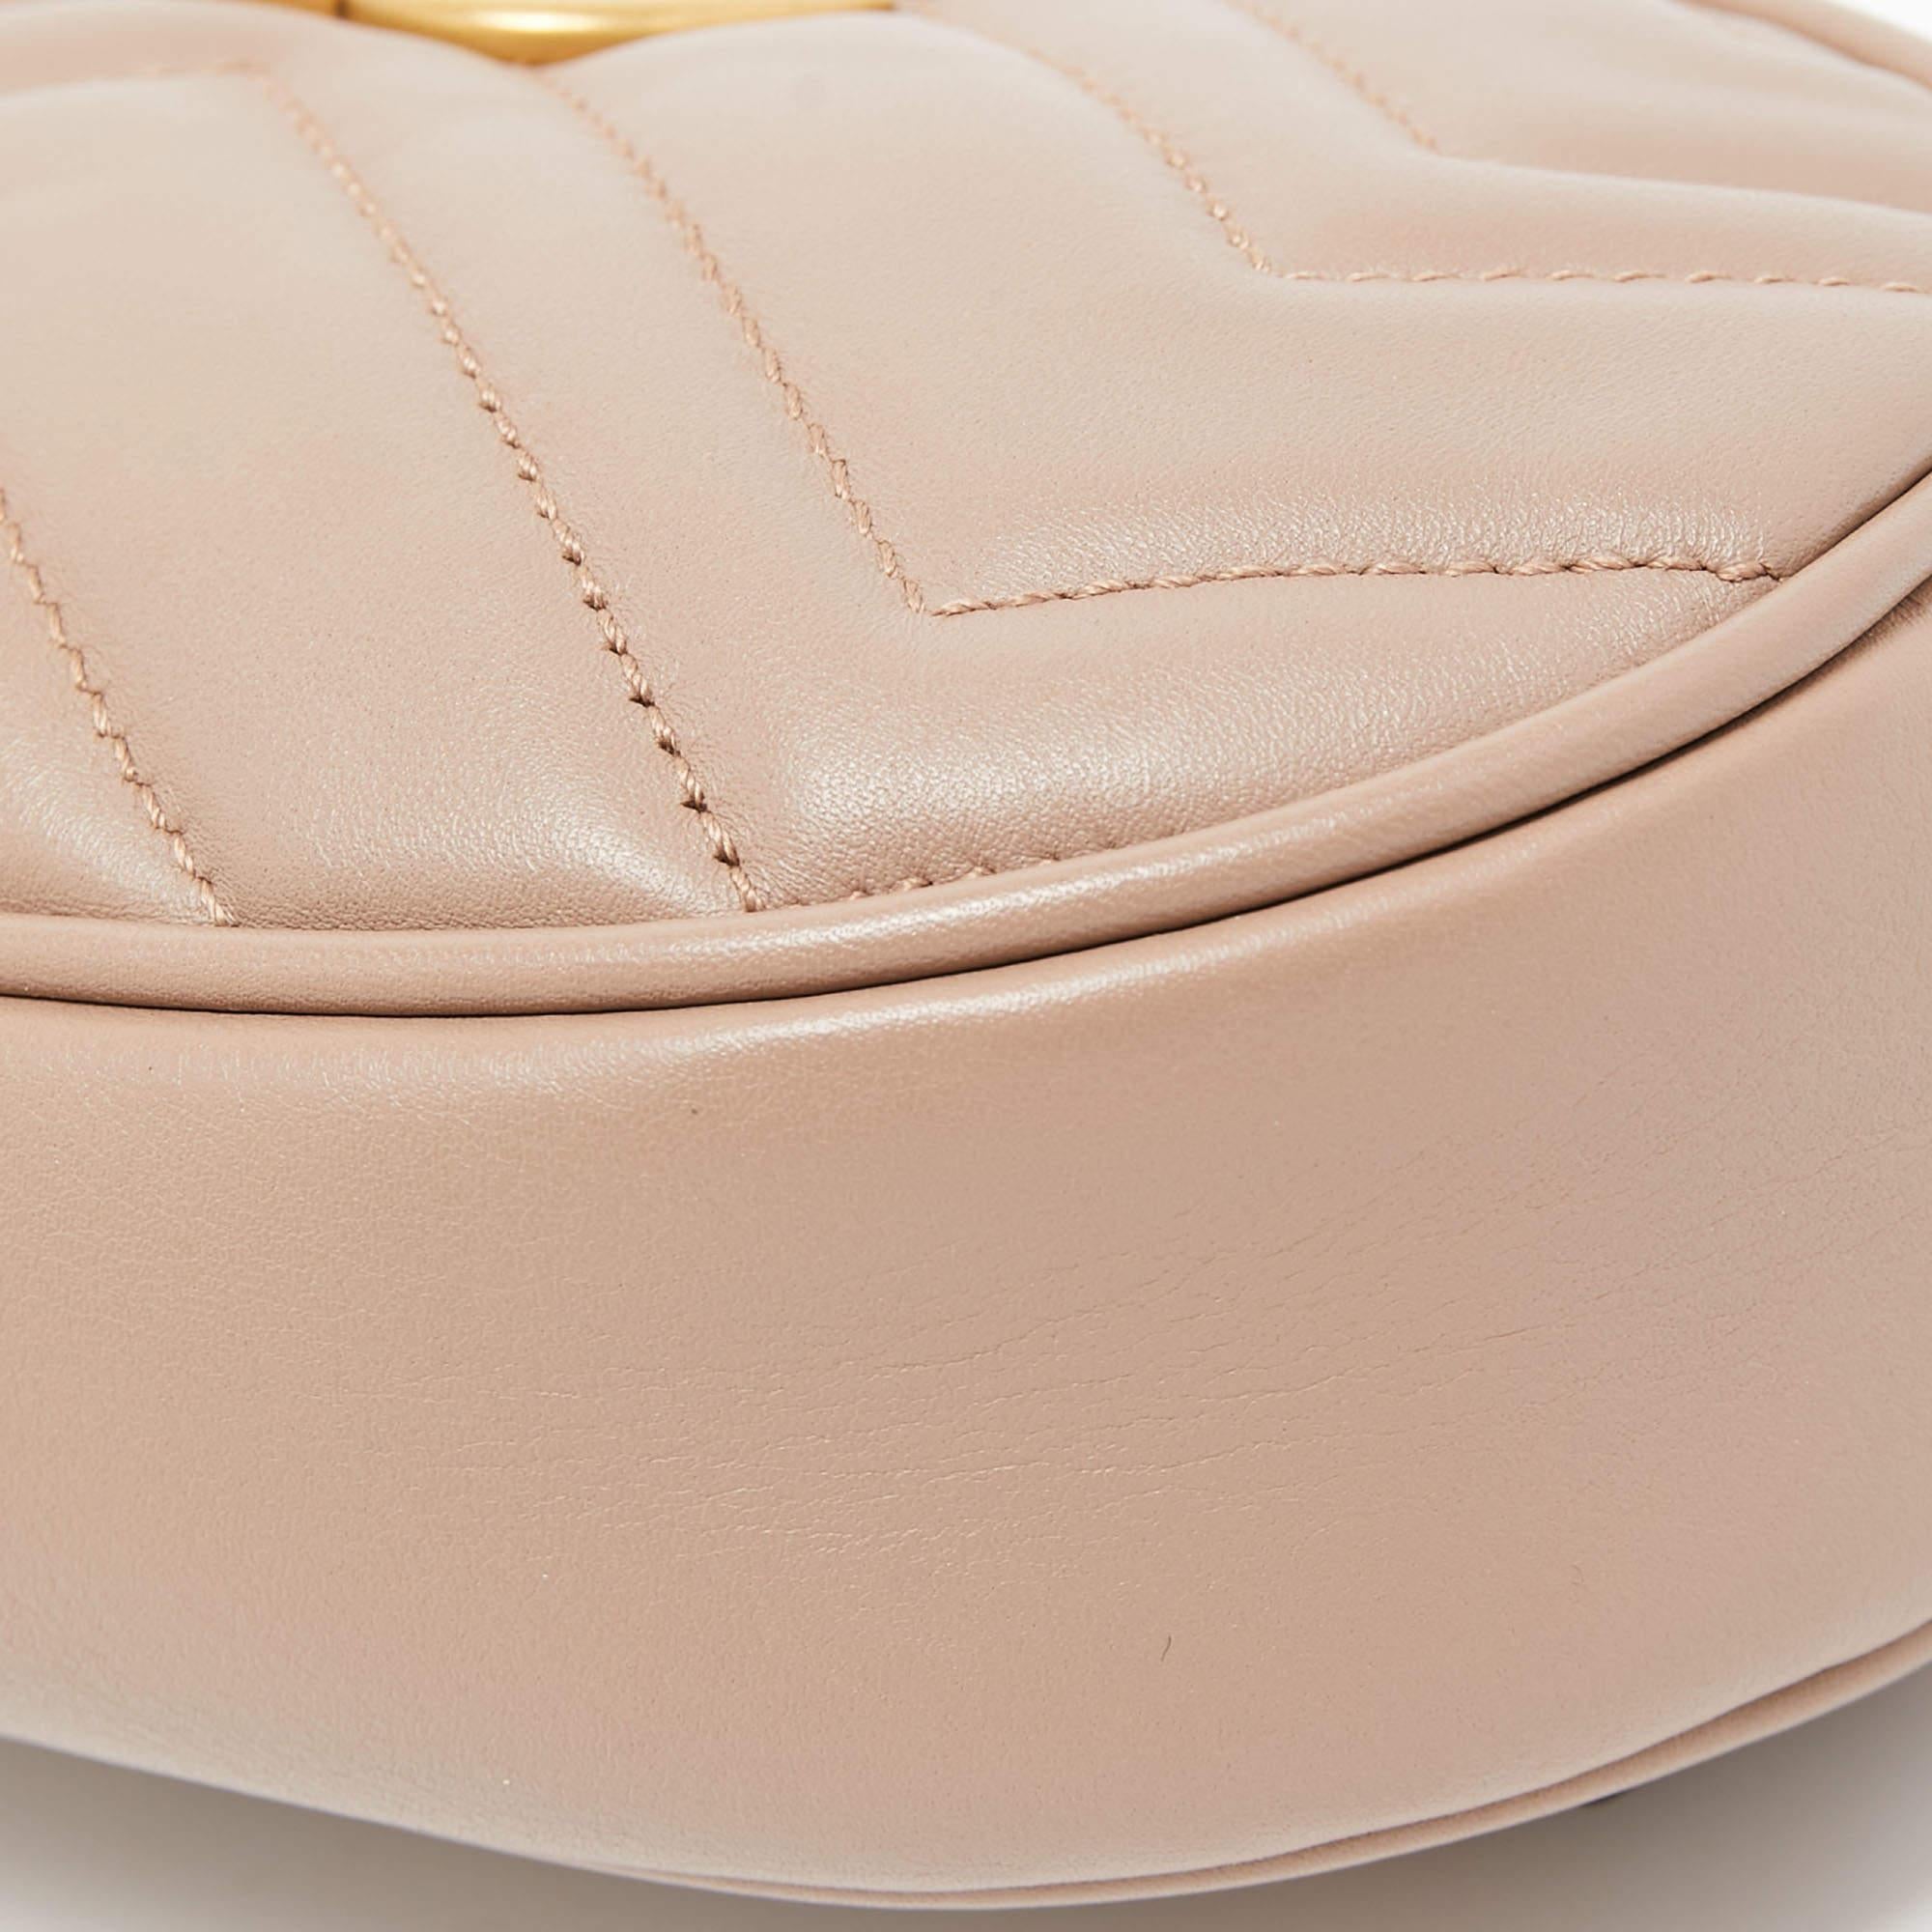 Women's Gucci Beige Matelassé Leather GG Marmont Belt Bag